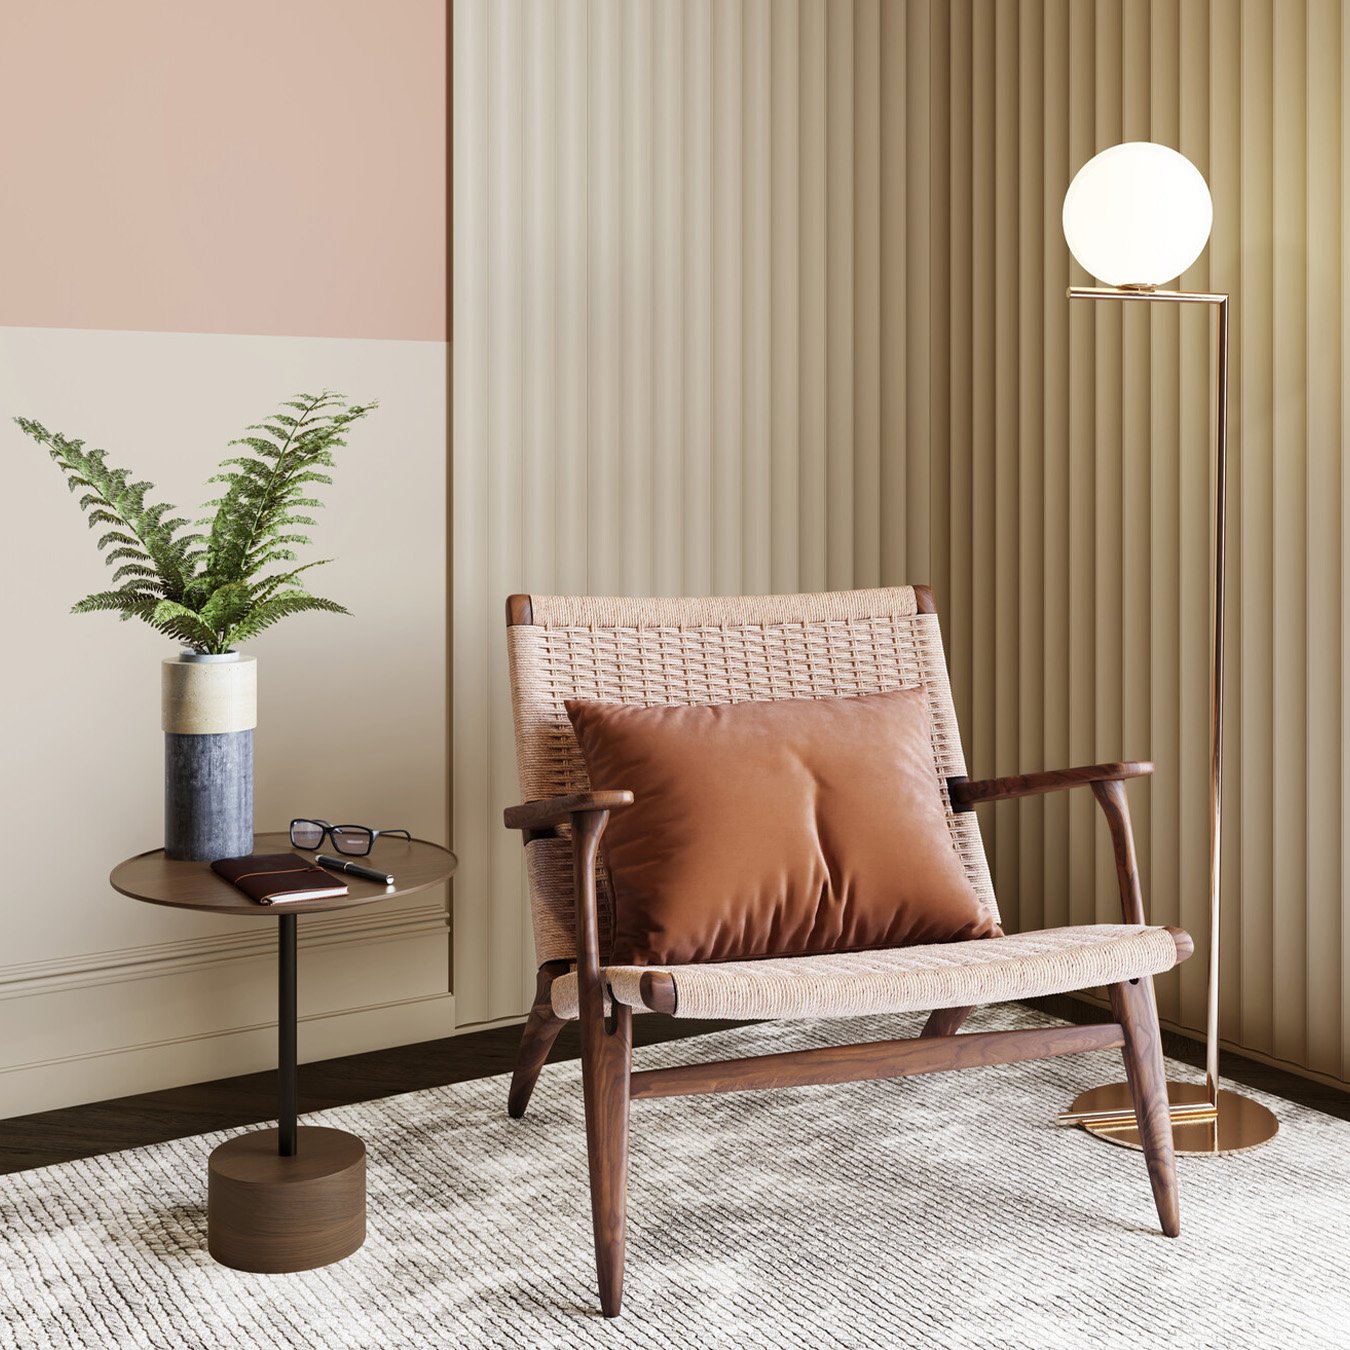 Sisustuskuva olohuoneen nurkasta, jossa jalkalamppu pyöreällä pallovalaisinosalla, nojatuoli, sekä sivupöytä jonka päällä pieni huonekasvi.